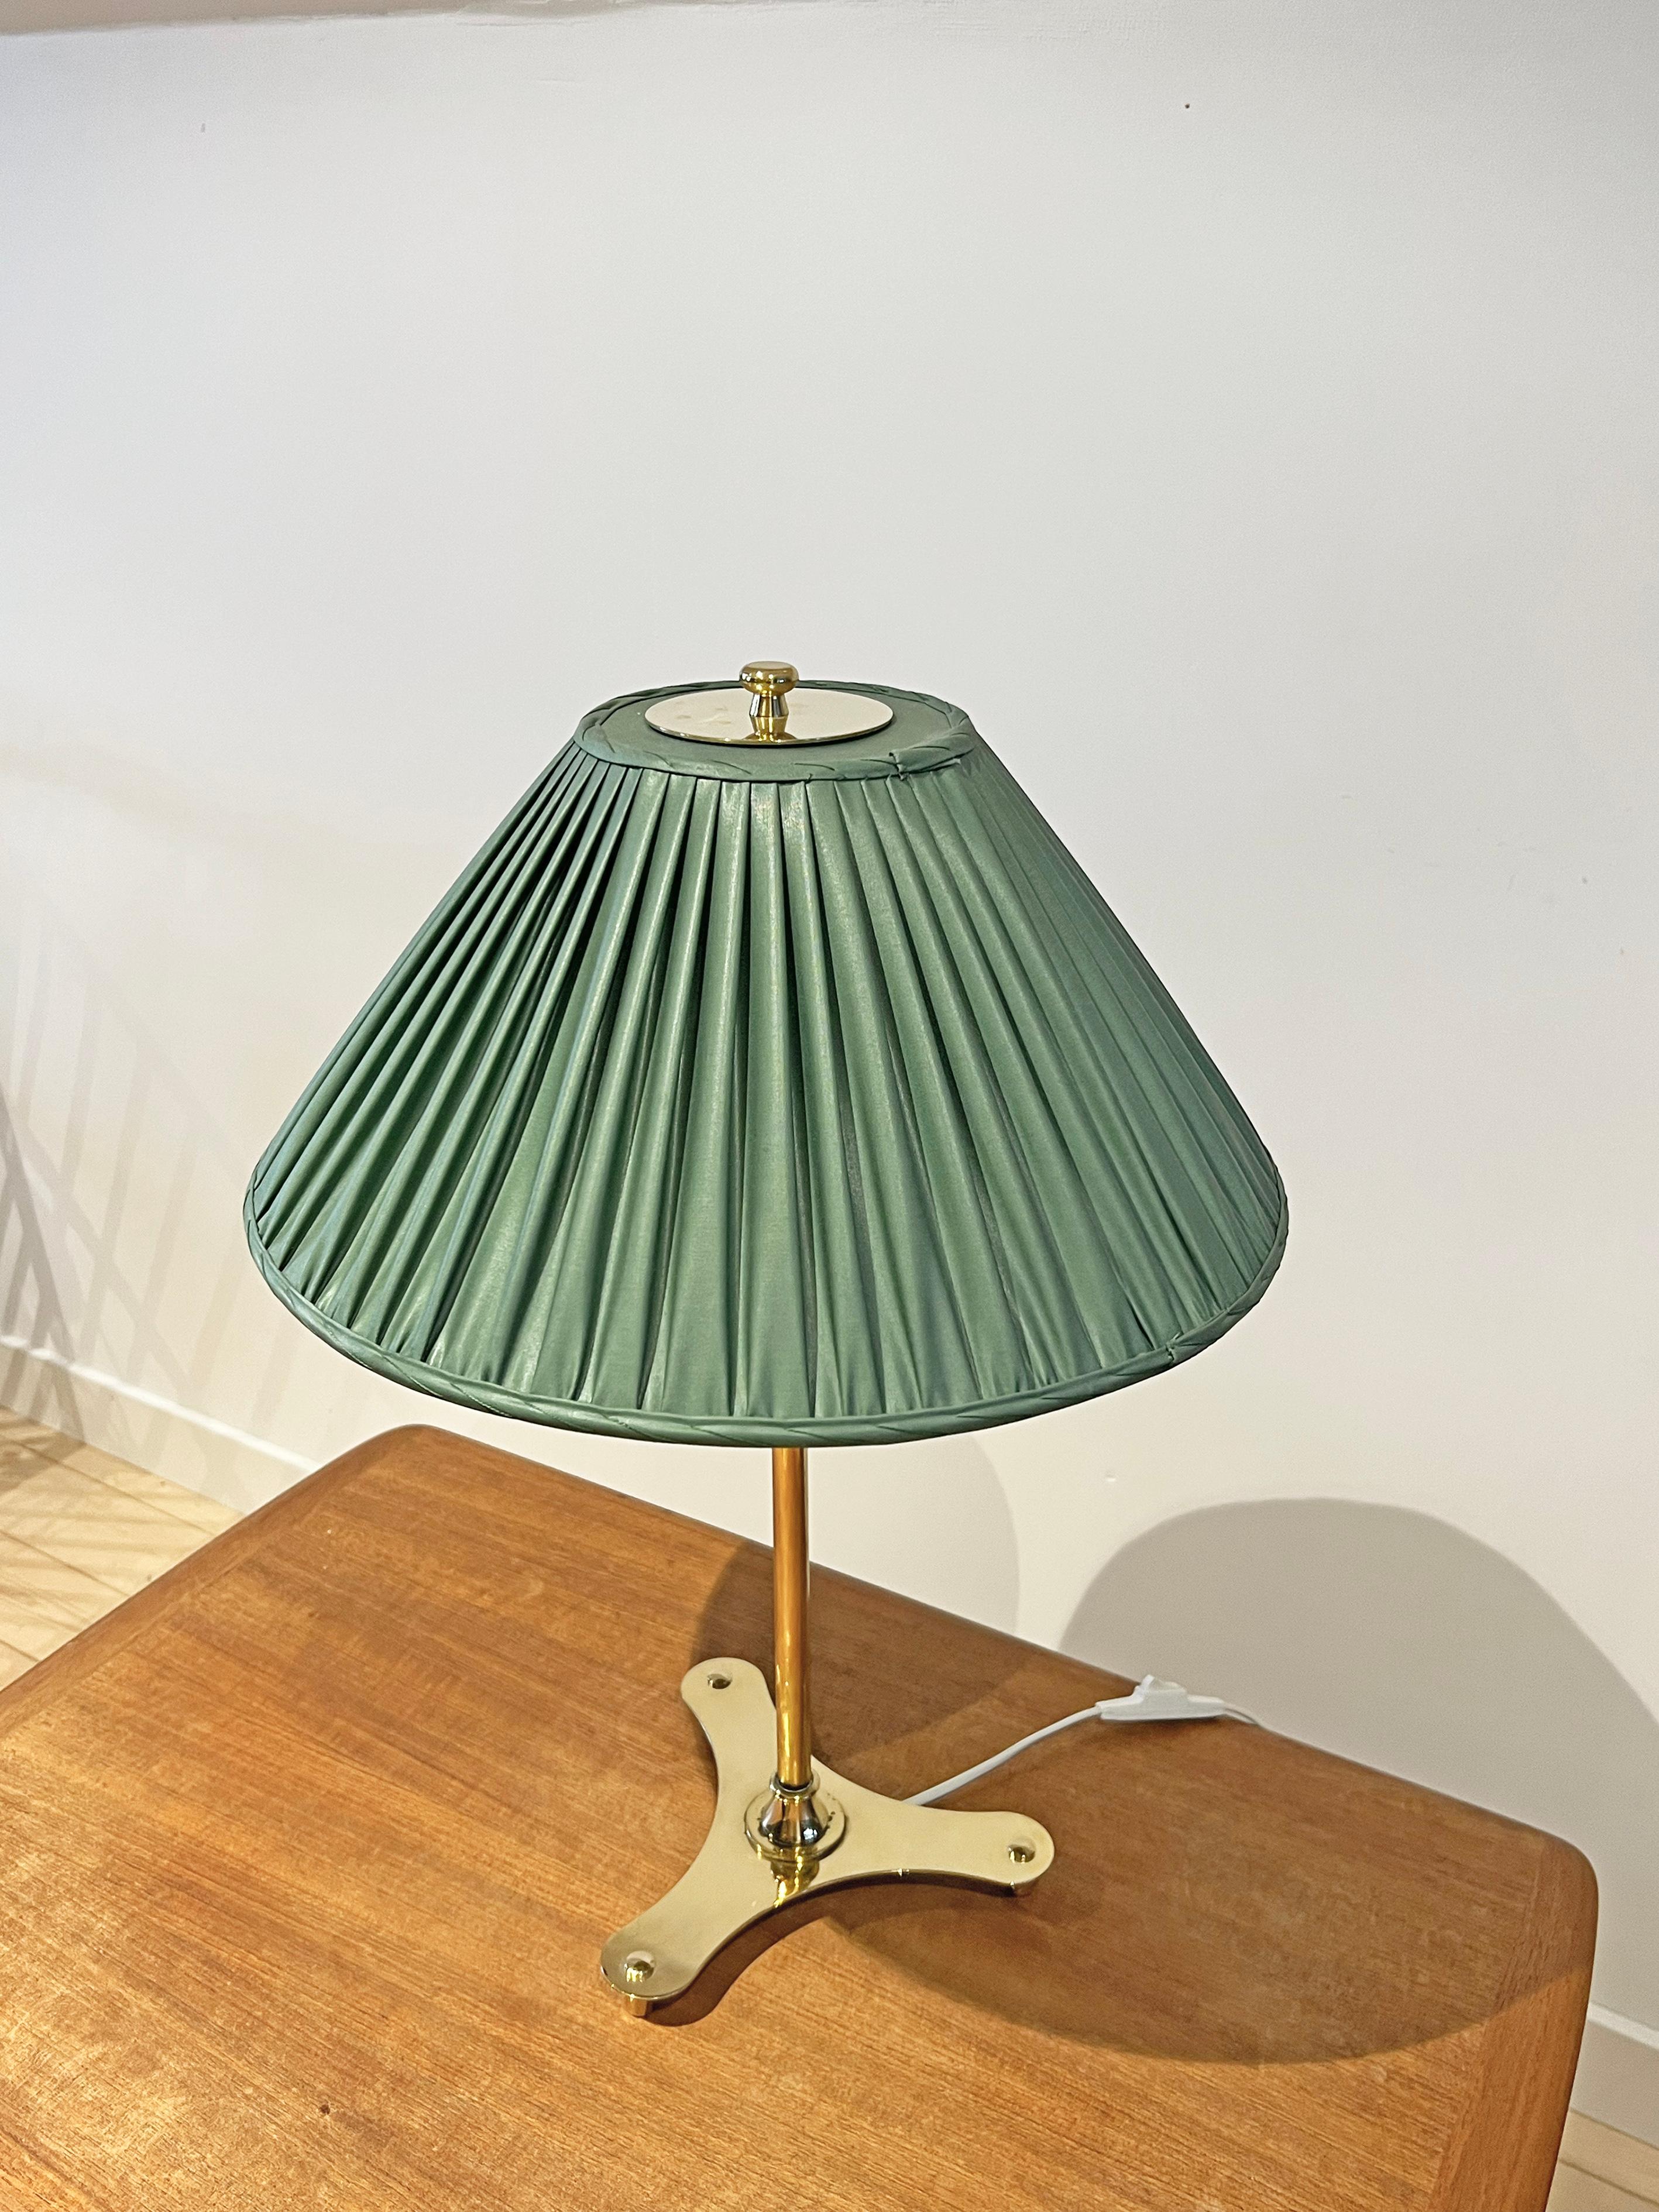 Tischleuchte Modell 2467/2, entworfen von Josef Frank für Firma Svenskt Tenn, Schweden,  1950s. Messing mit Stoffschirm (der Schirm ist höchstwahrscheinlich original). 
Signiert mit Herstellermarke. 
Dieses Modell ist im Katalog von Svenskt Tenn aus